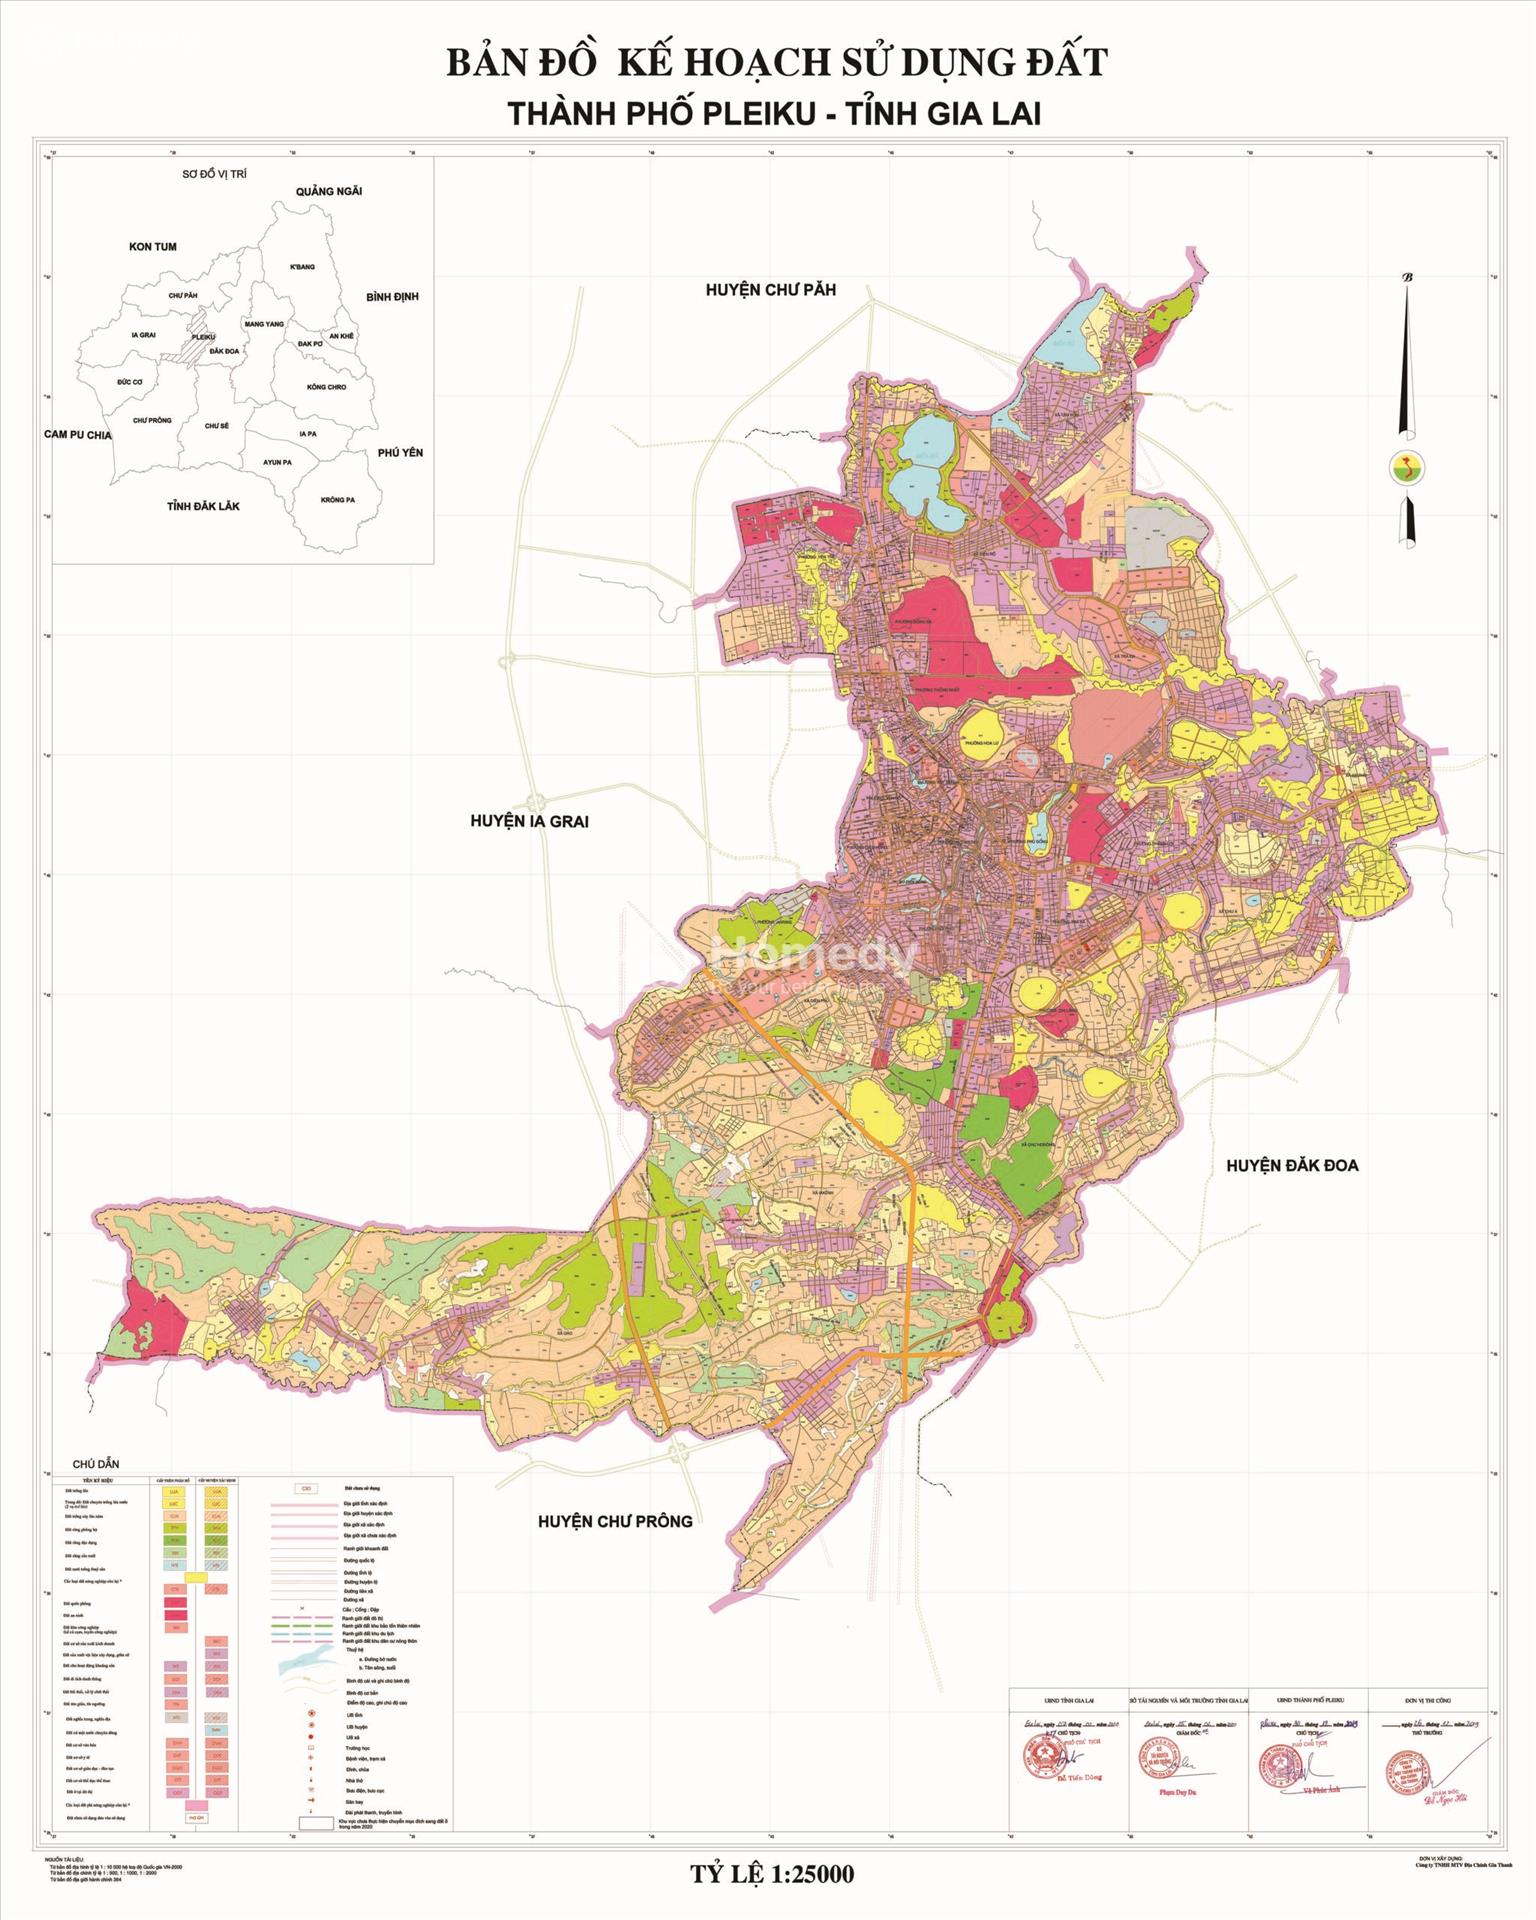 Bản đồ chi tiết quy hoạch TP Pleiku 2030: Với những kế hoạch quy hoạch chi tiết cho đến năm 2030, bản đồ quy hoạch của thành phố Pleiku sẽ là cẩm nang hữu ích để bạn khám phá thành phố mới. Hãy cùng tìm hiểu và cảm nhận sự thay đổi đầy tích cực của Pleiku, một thành phố đang trưởng thành và phát triển.